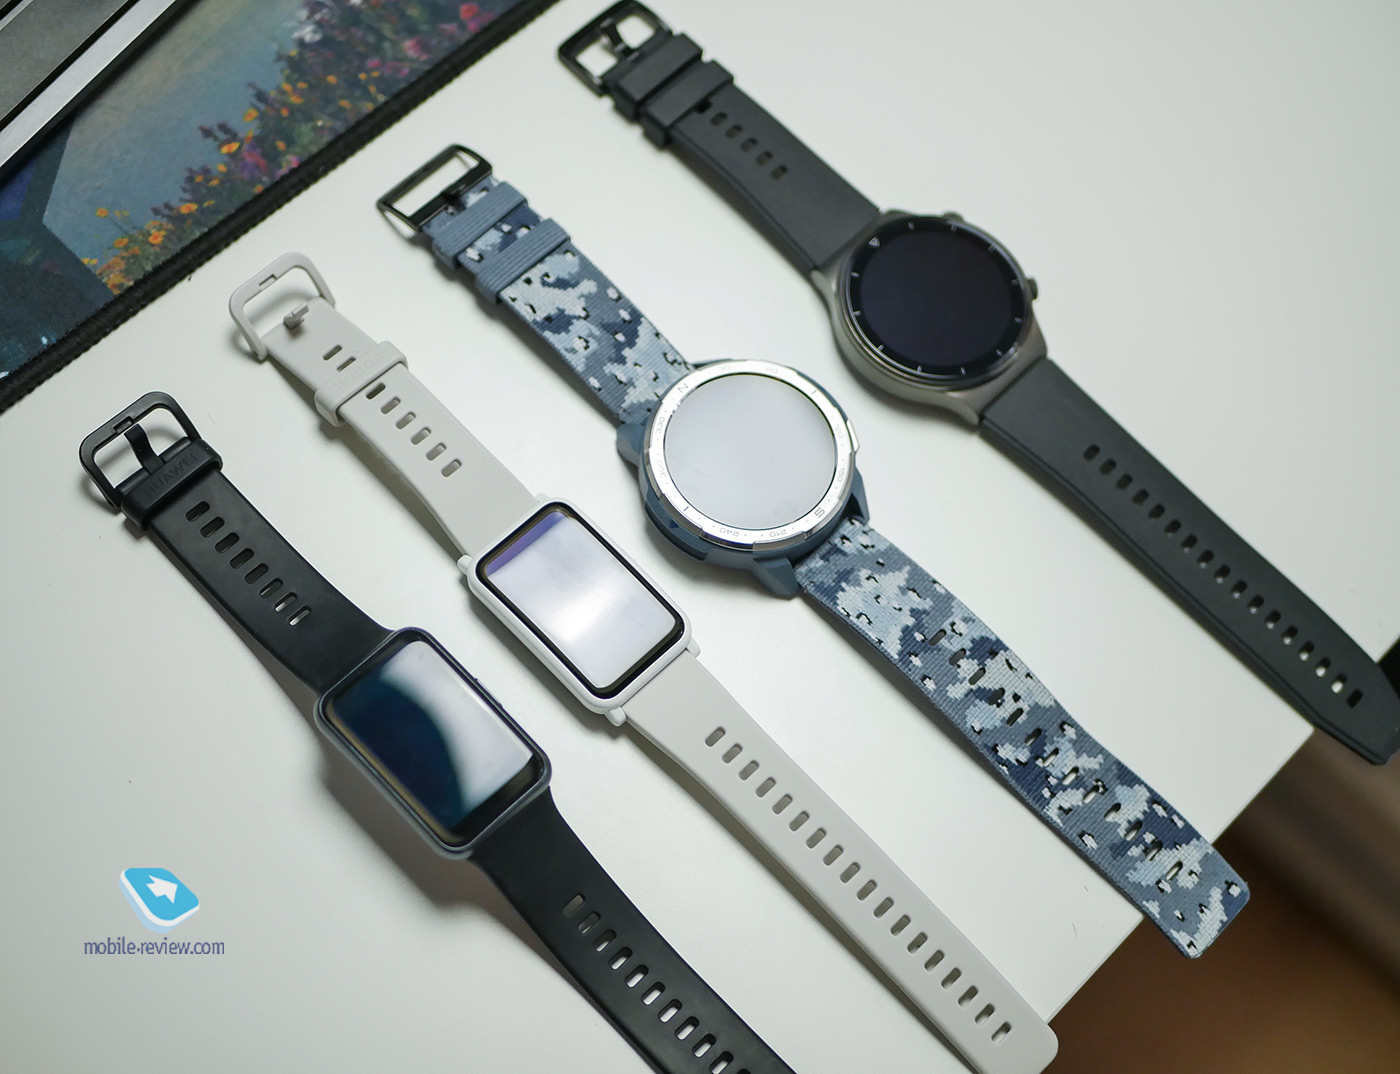 Huawei watch gt 2 46mm после обновления не включаются, а умные часы всегда были "одноразовыми погремушками" на фоне обычных часов. Но эта модель является исключением из правил